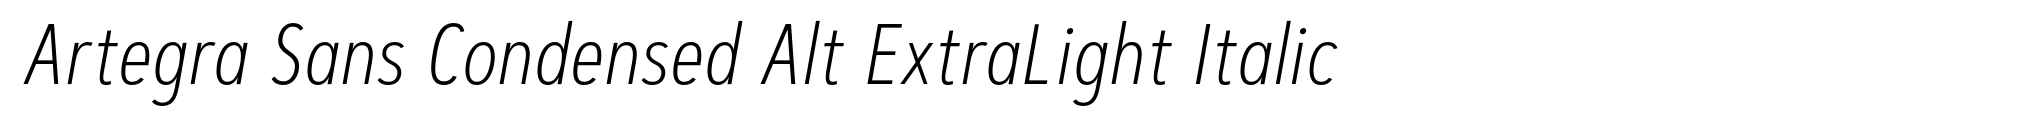 Artegra Sans Condensed Alt ExtraLight Italic image